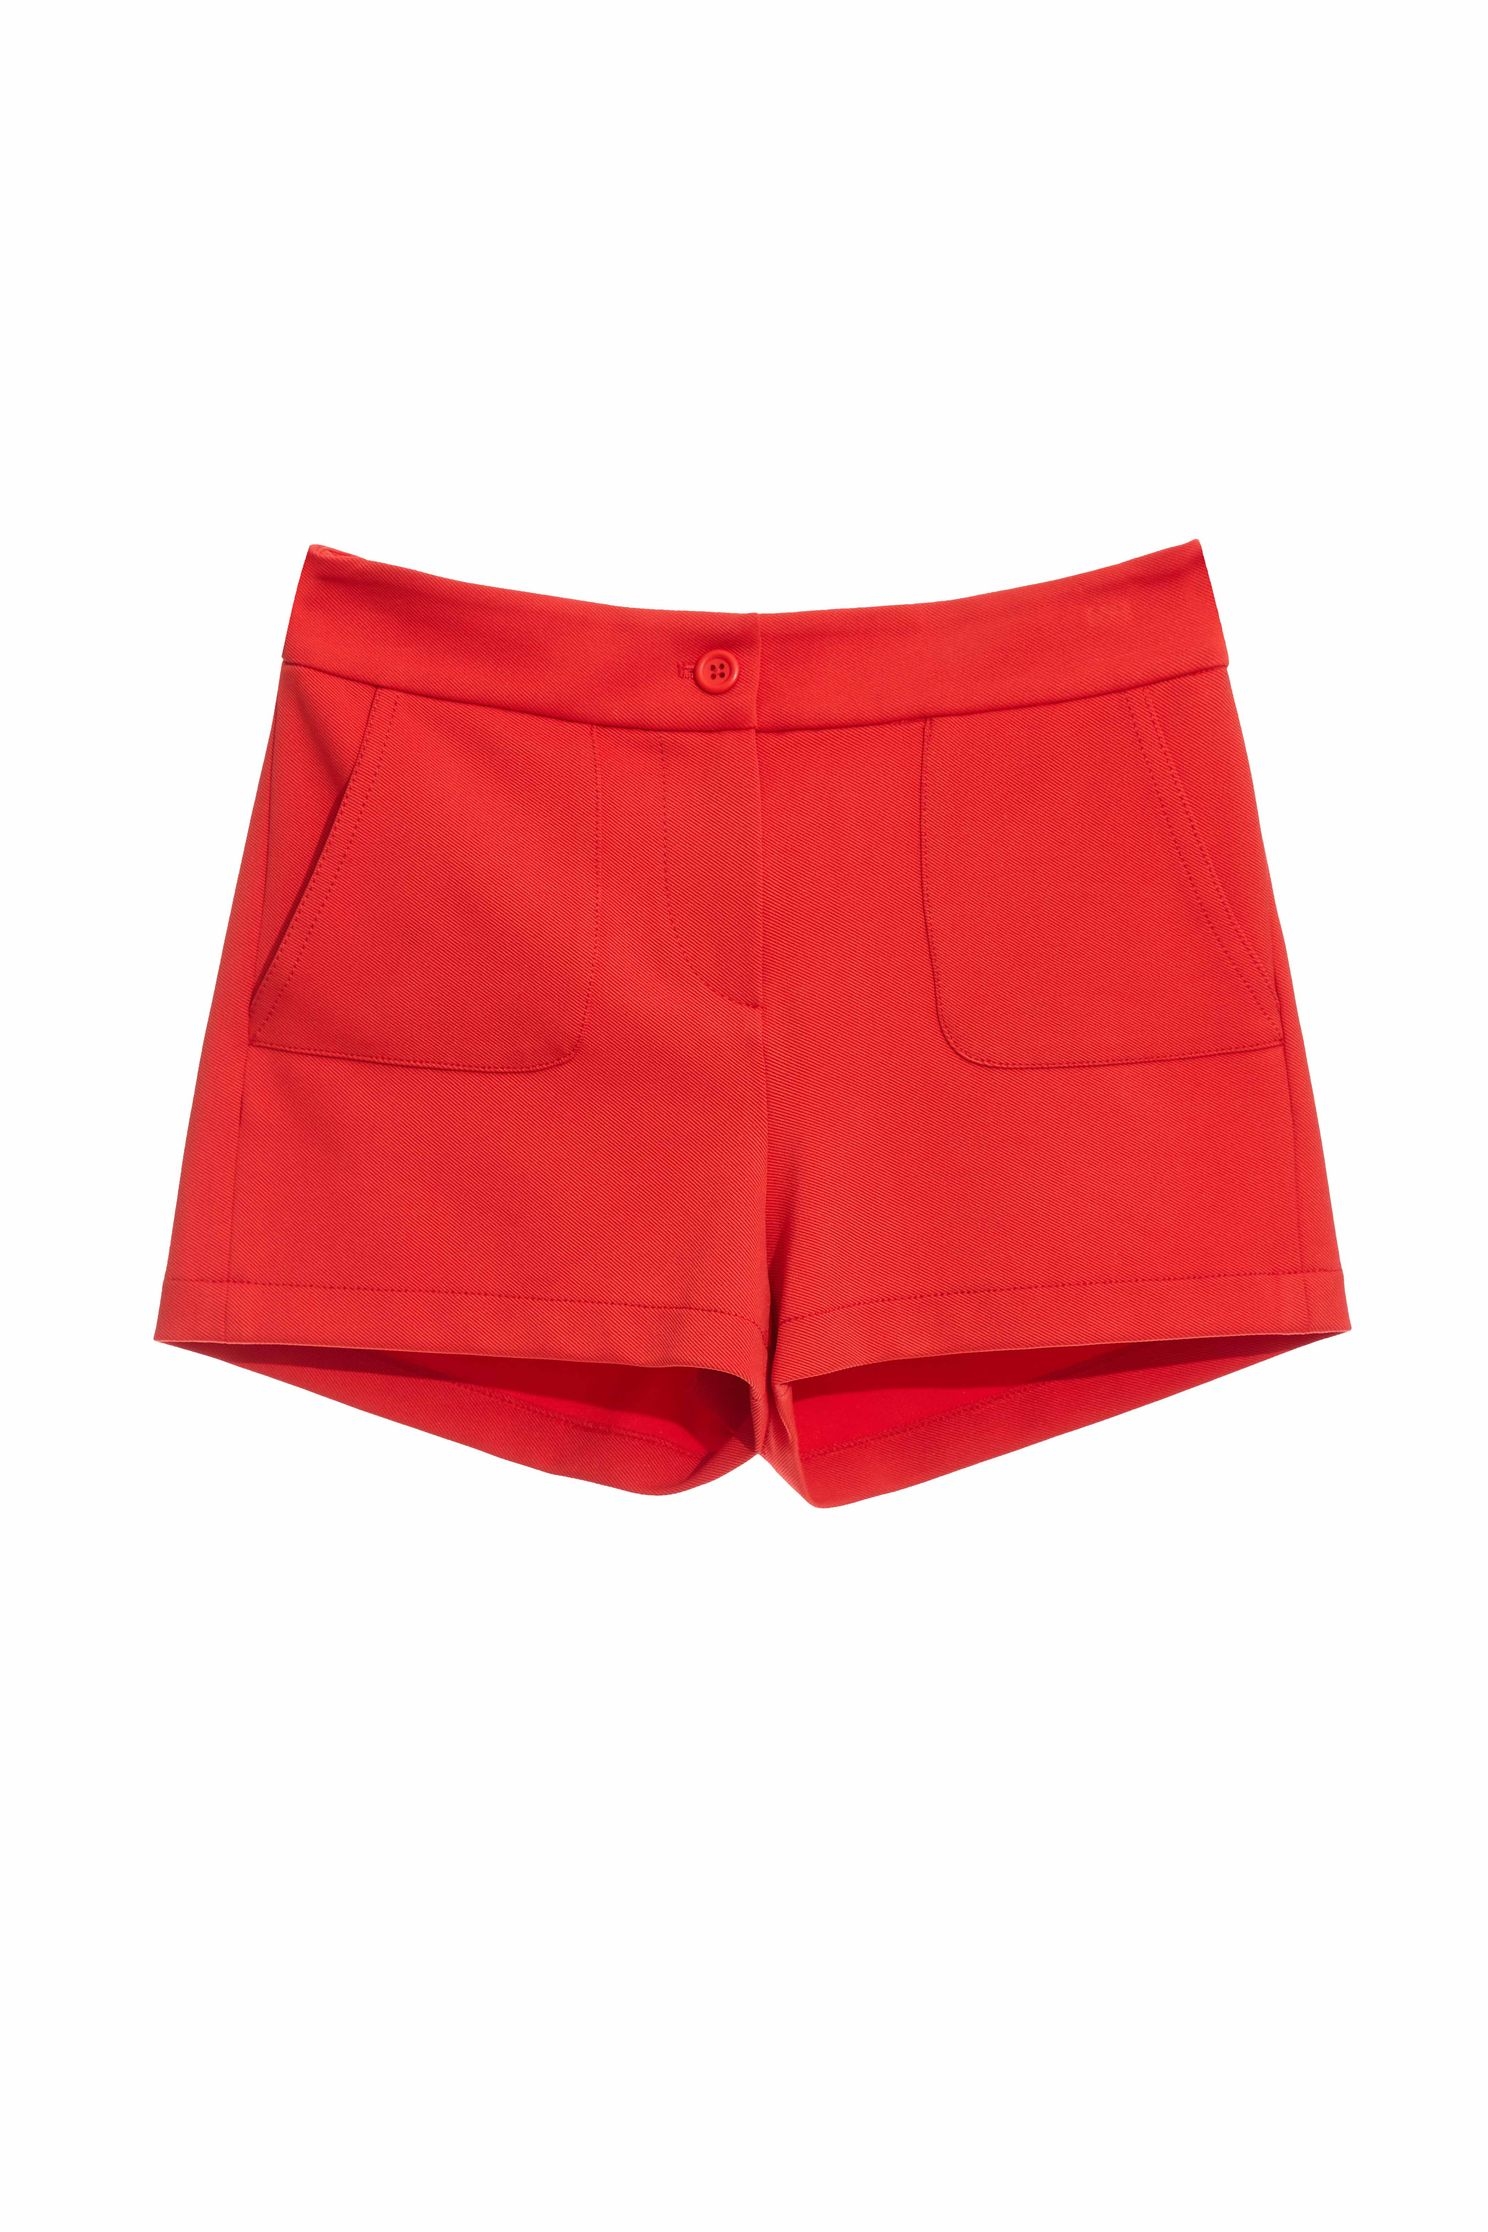 橘紅色短褲橘紅色短褲,春夏穿搭,短褲,舒適主義,針織,開運紅